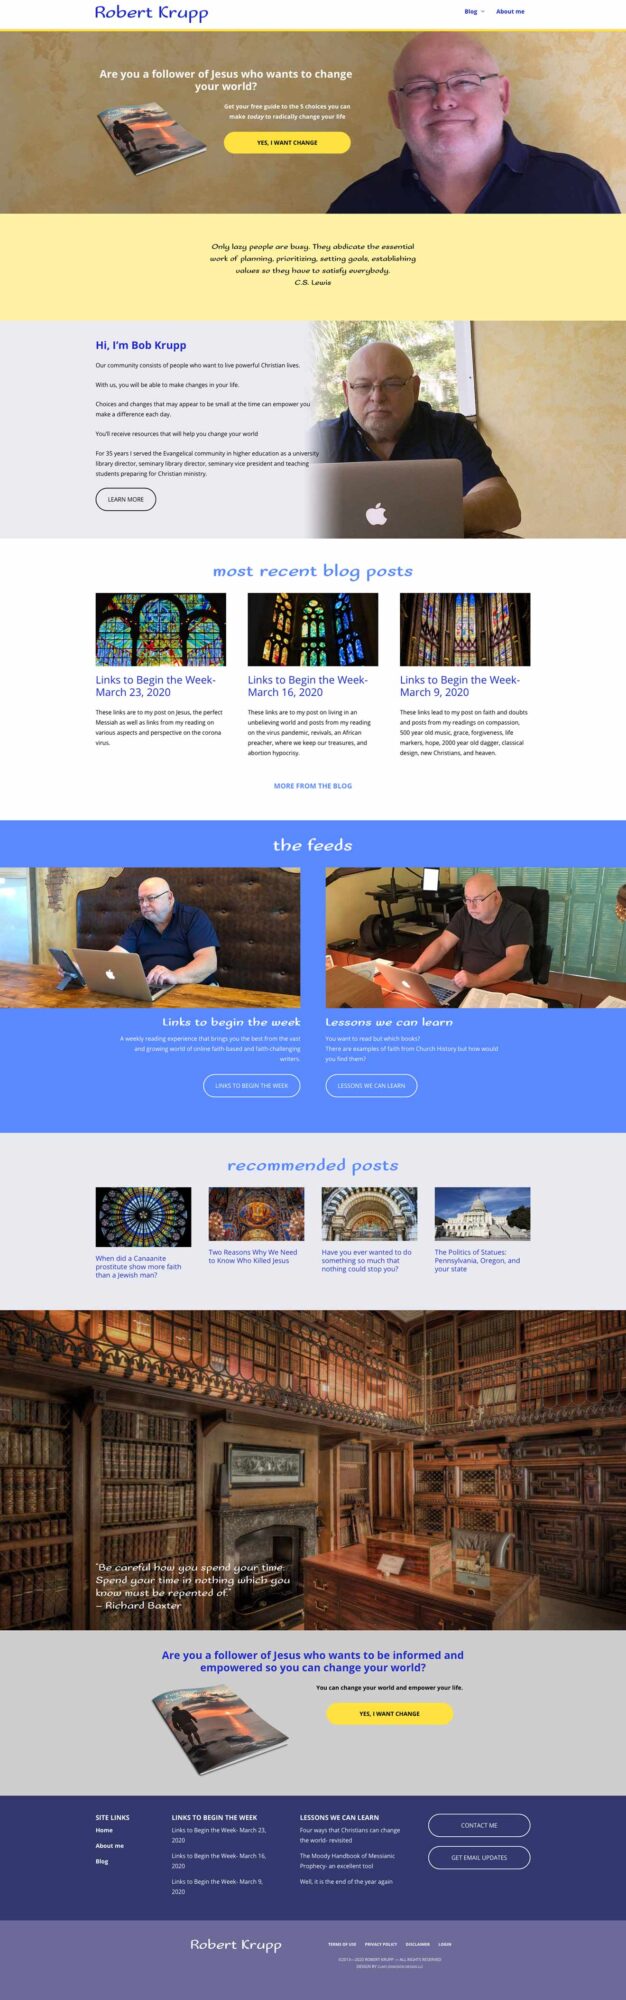 RobertKrupp.com homepage